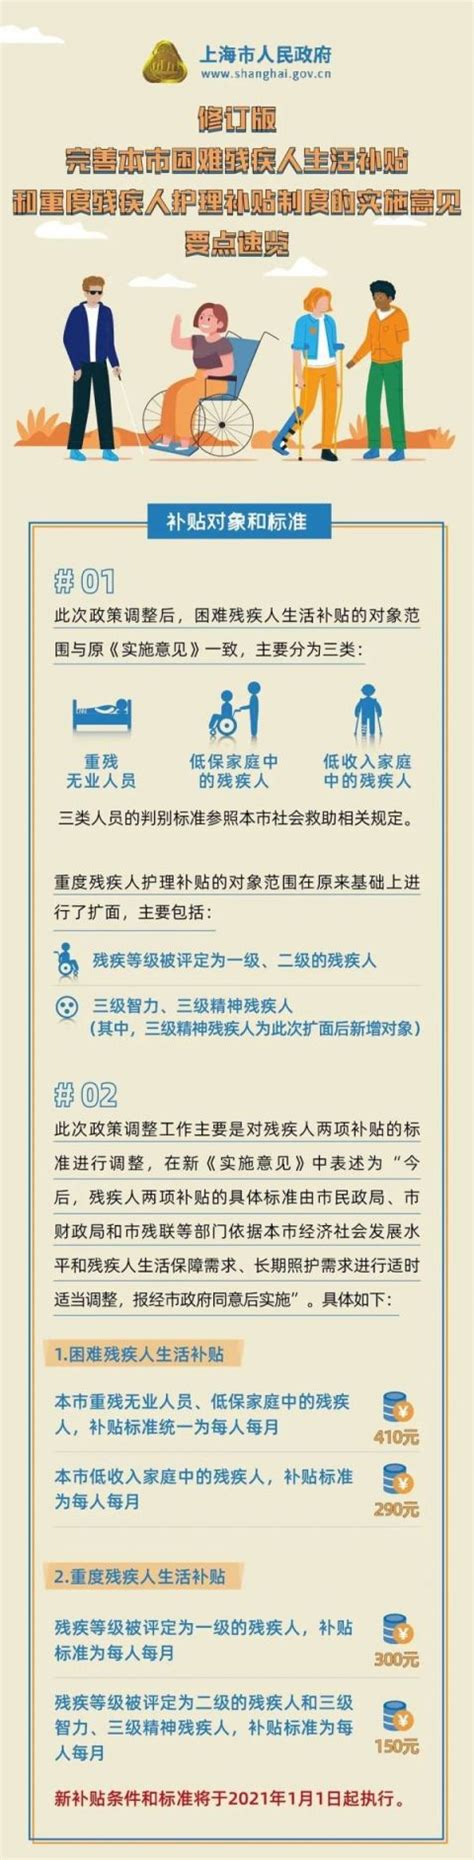 一图解读上海困难残疾人生活补贴和重度残疾人护理补贴制度的实施意见- 上海本地宝